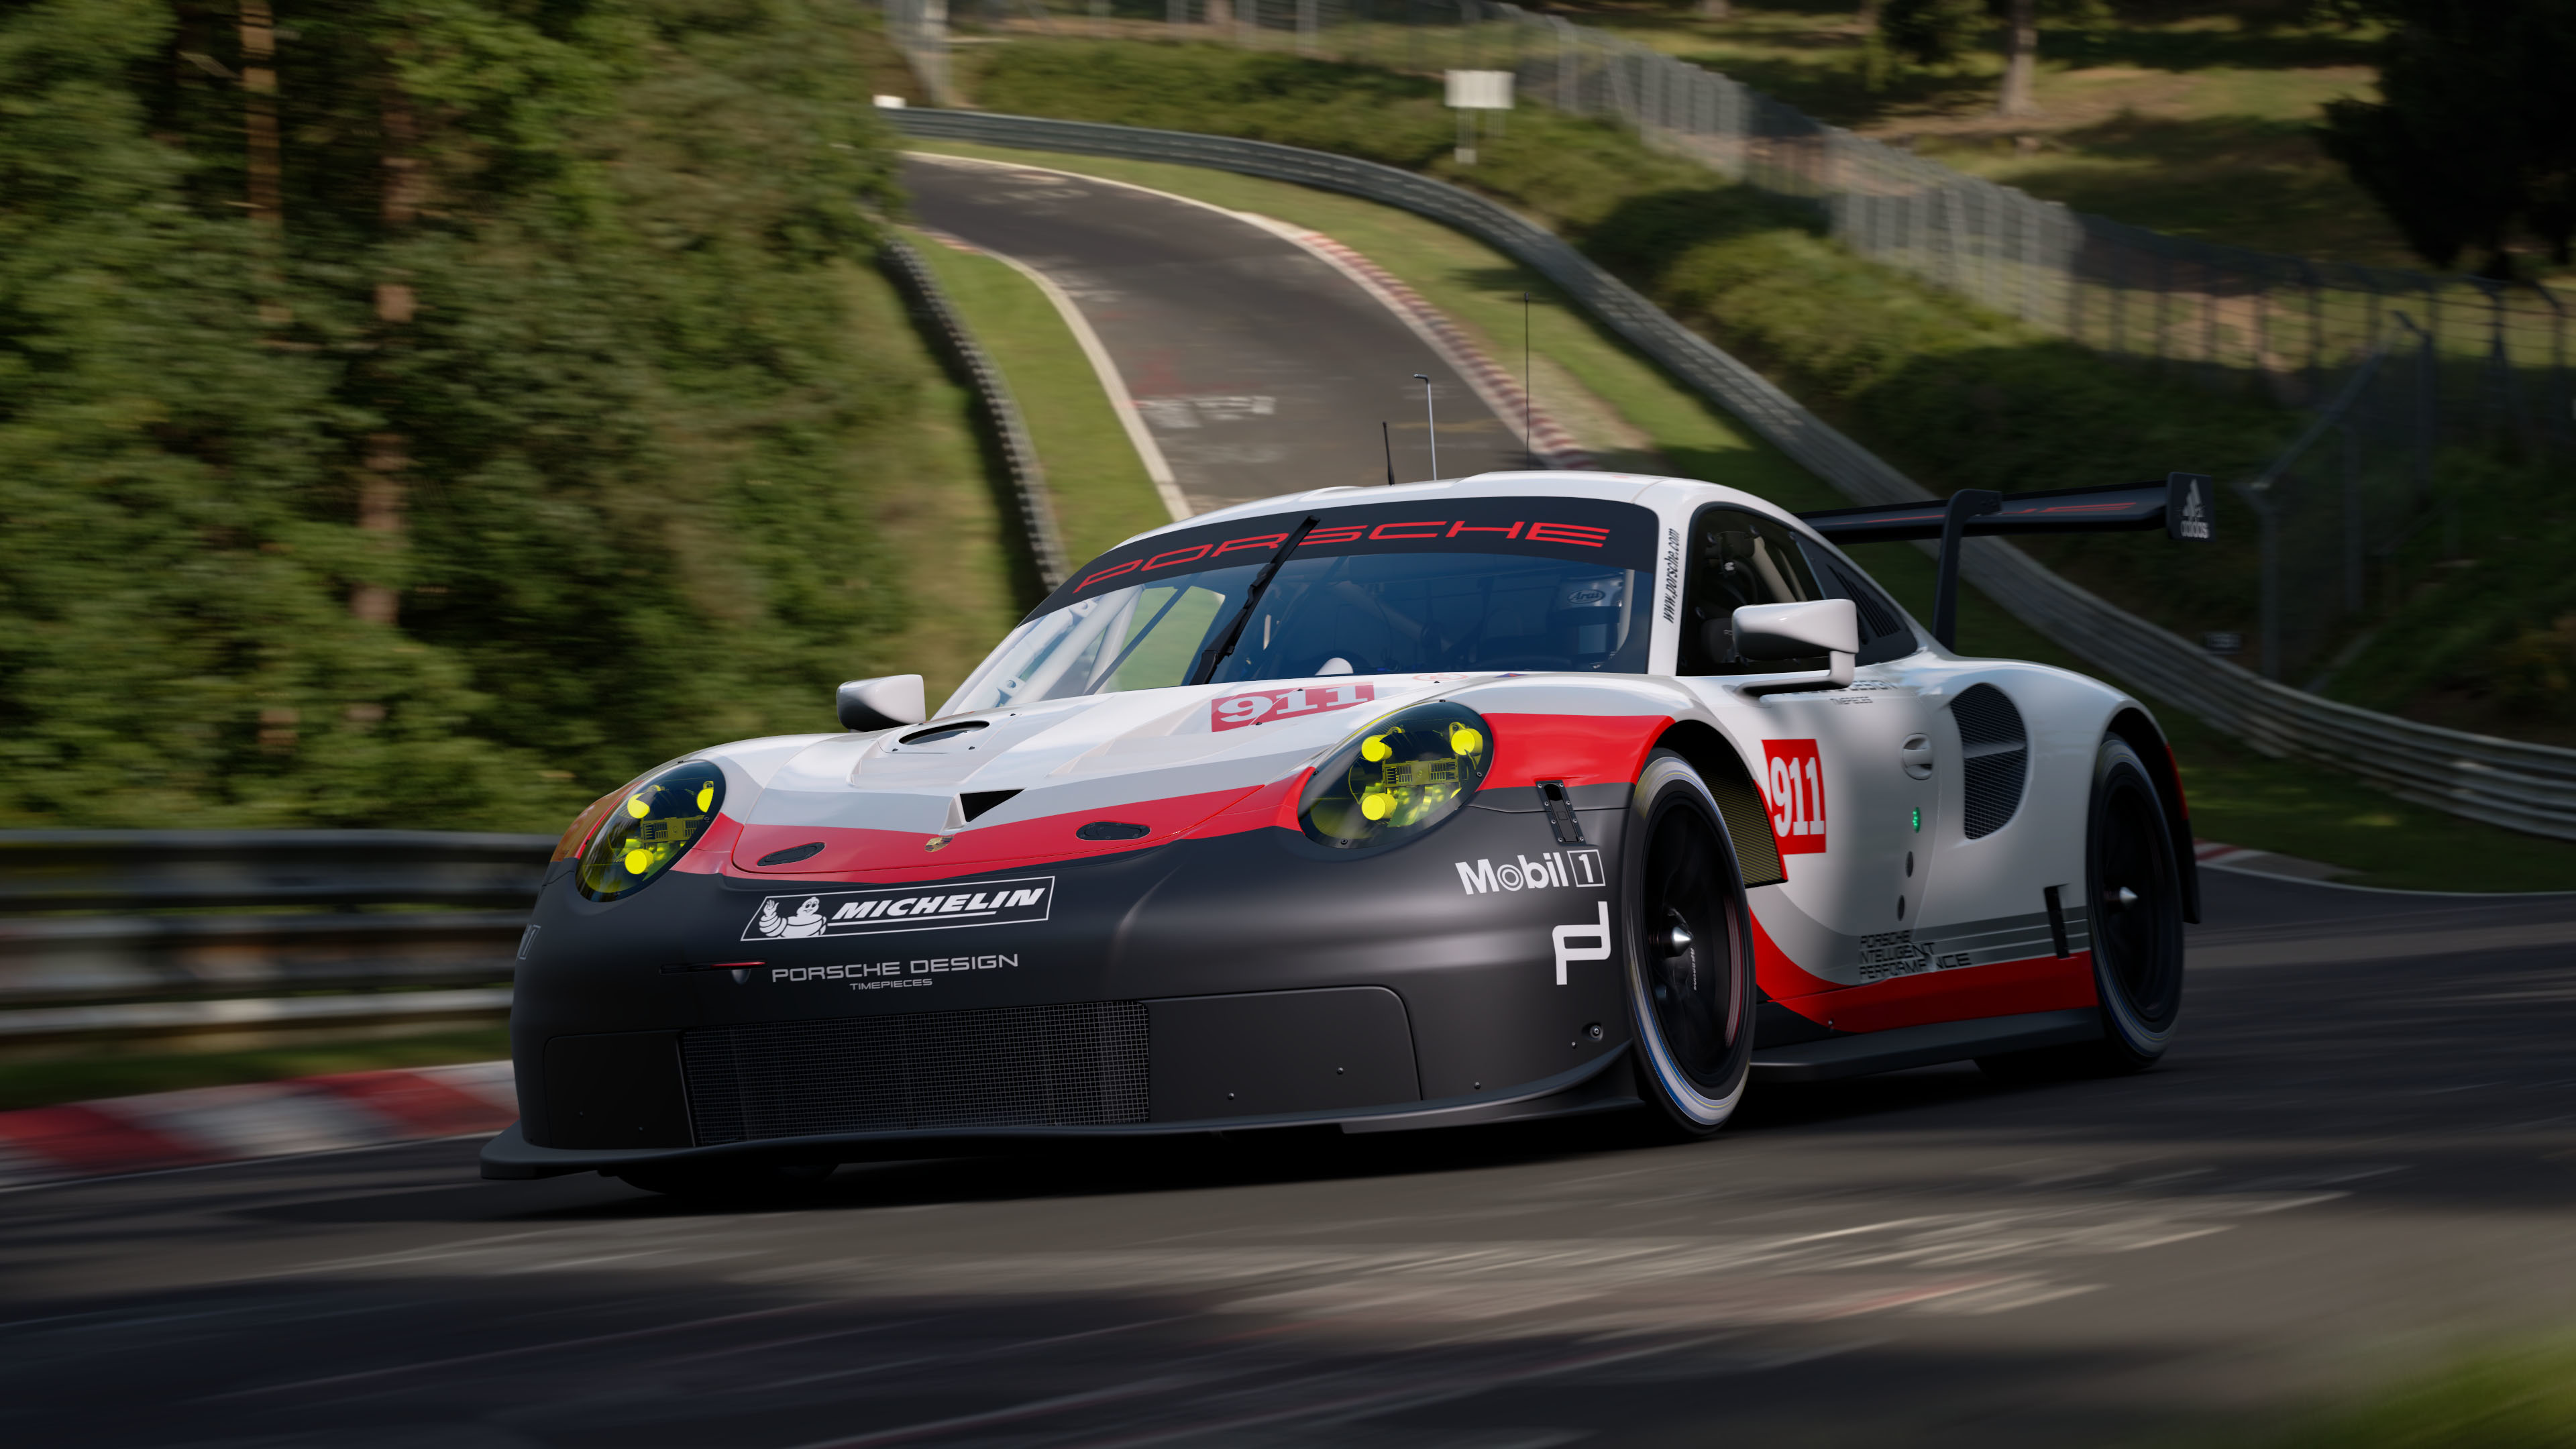 Grant turismo. Гран Туризмо спорт Порше. Porsche 911 gt Sport. Порше 911 Гран Туризмо. Porsche 911 Gran Turismo Sport.